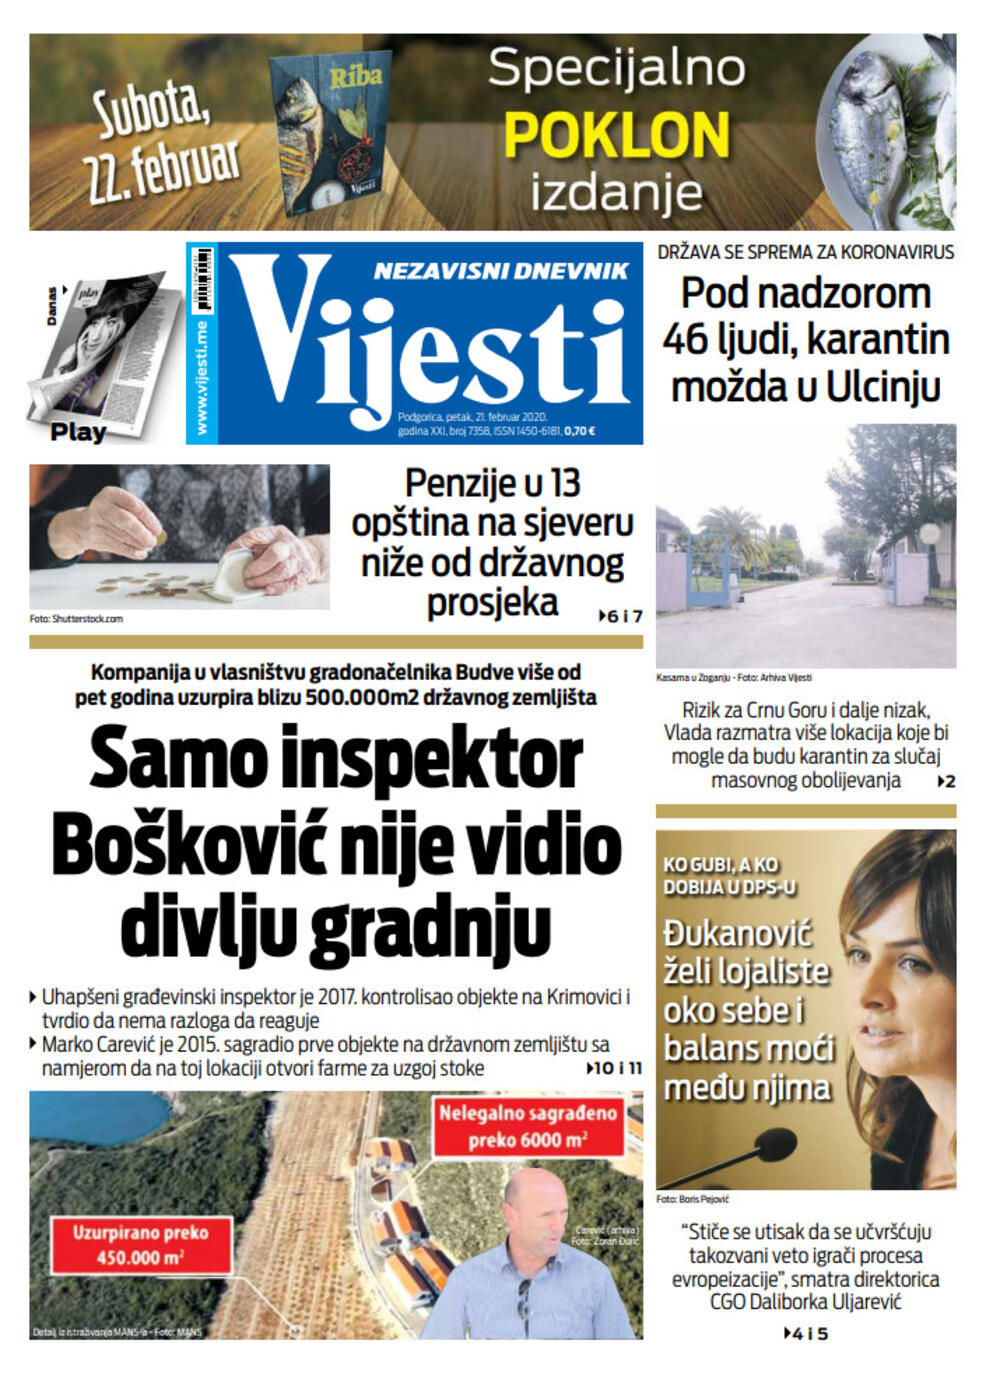 Naslovna strana "Vijesti" za 21. februar 2020., Foto: Vijesti